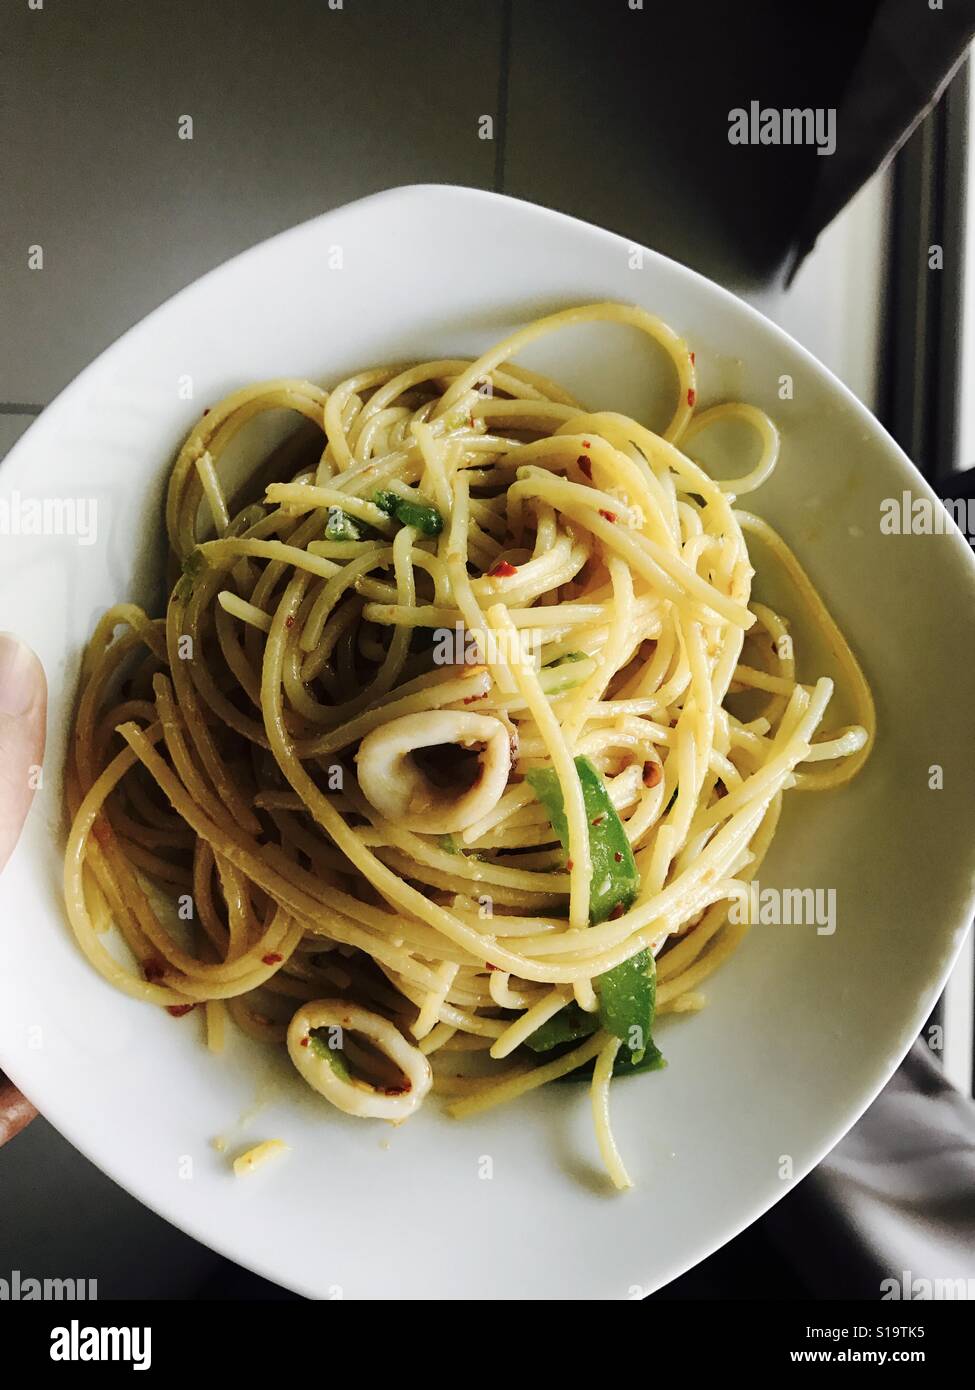 Aglio olio spaghetti Stock Photo